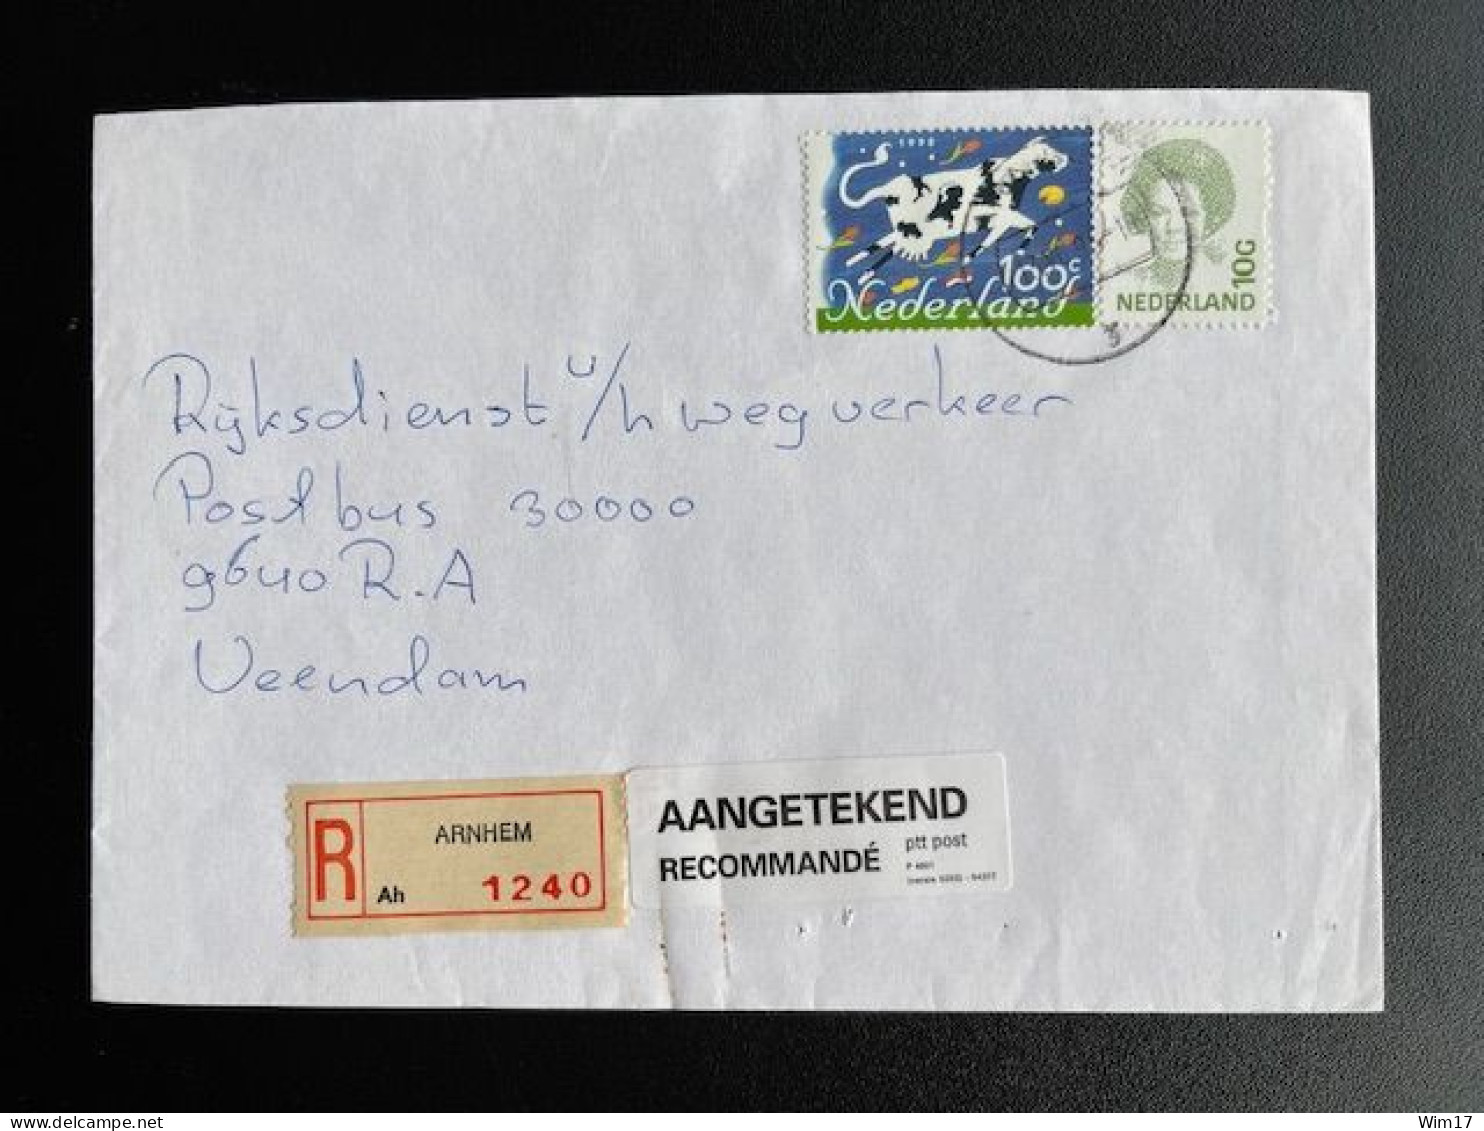 NETHERLANDS 1995 REGISTERED LETTER ARNHEM TO VEENDAM 13-06-1995 NEDERLAND AANGETEKEND - Storia Postale